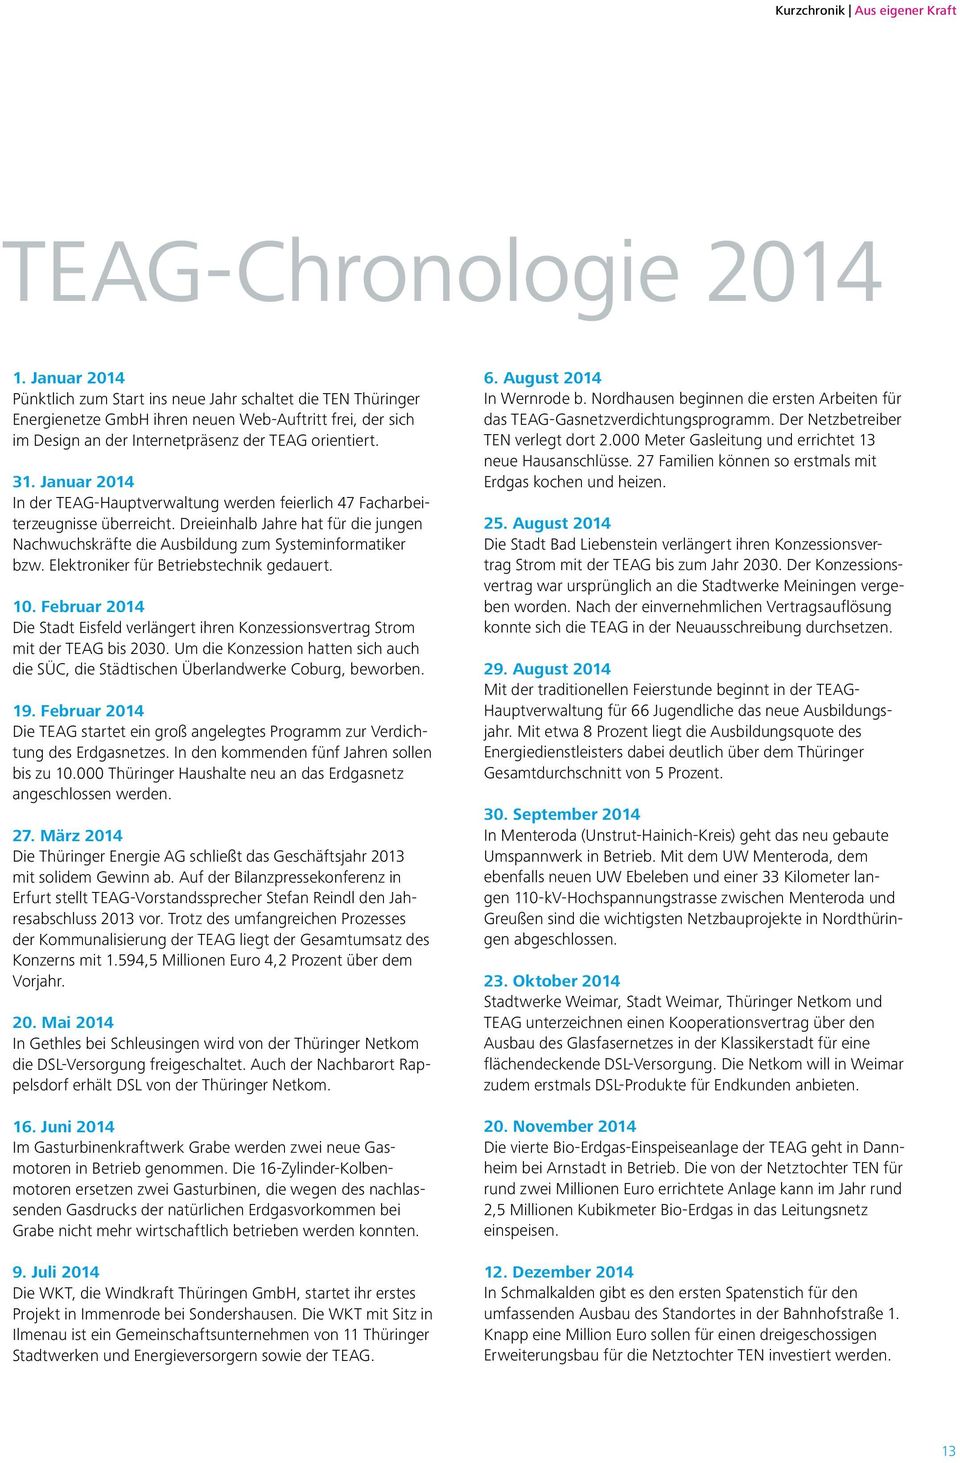 Januar 2014 In der TEAG-Hauptverwaltung werden feierlich 47 Facharbeiterzeugnisse überreicht. Dreieinhalb Jahre hat für die jungen Nachwuchskräfte die Ausbildung zum Systeminformatiker bzw.